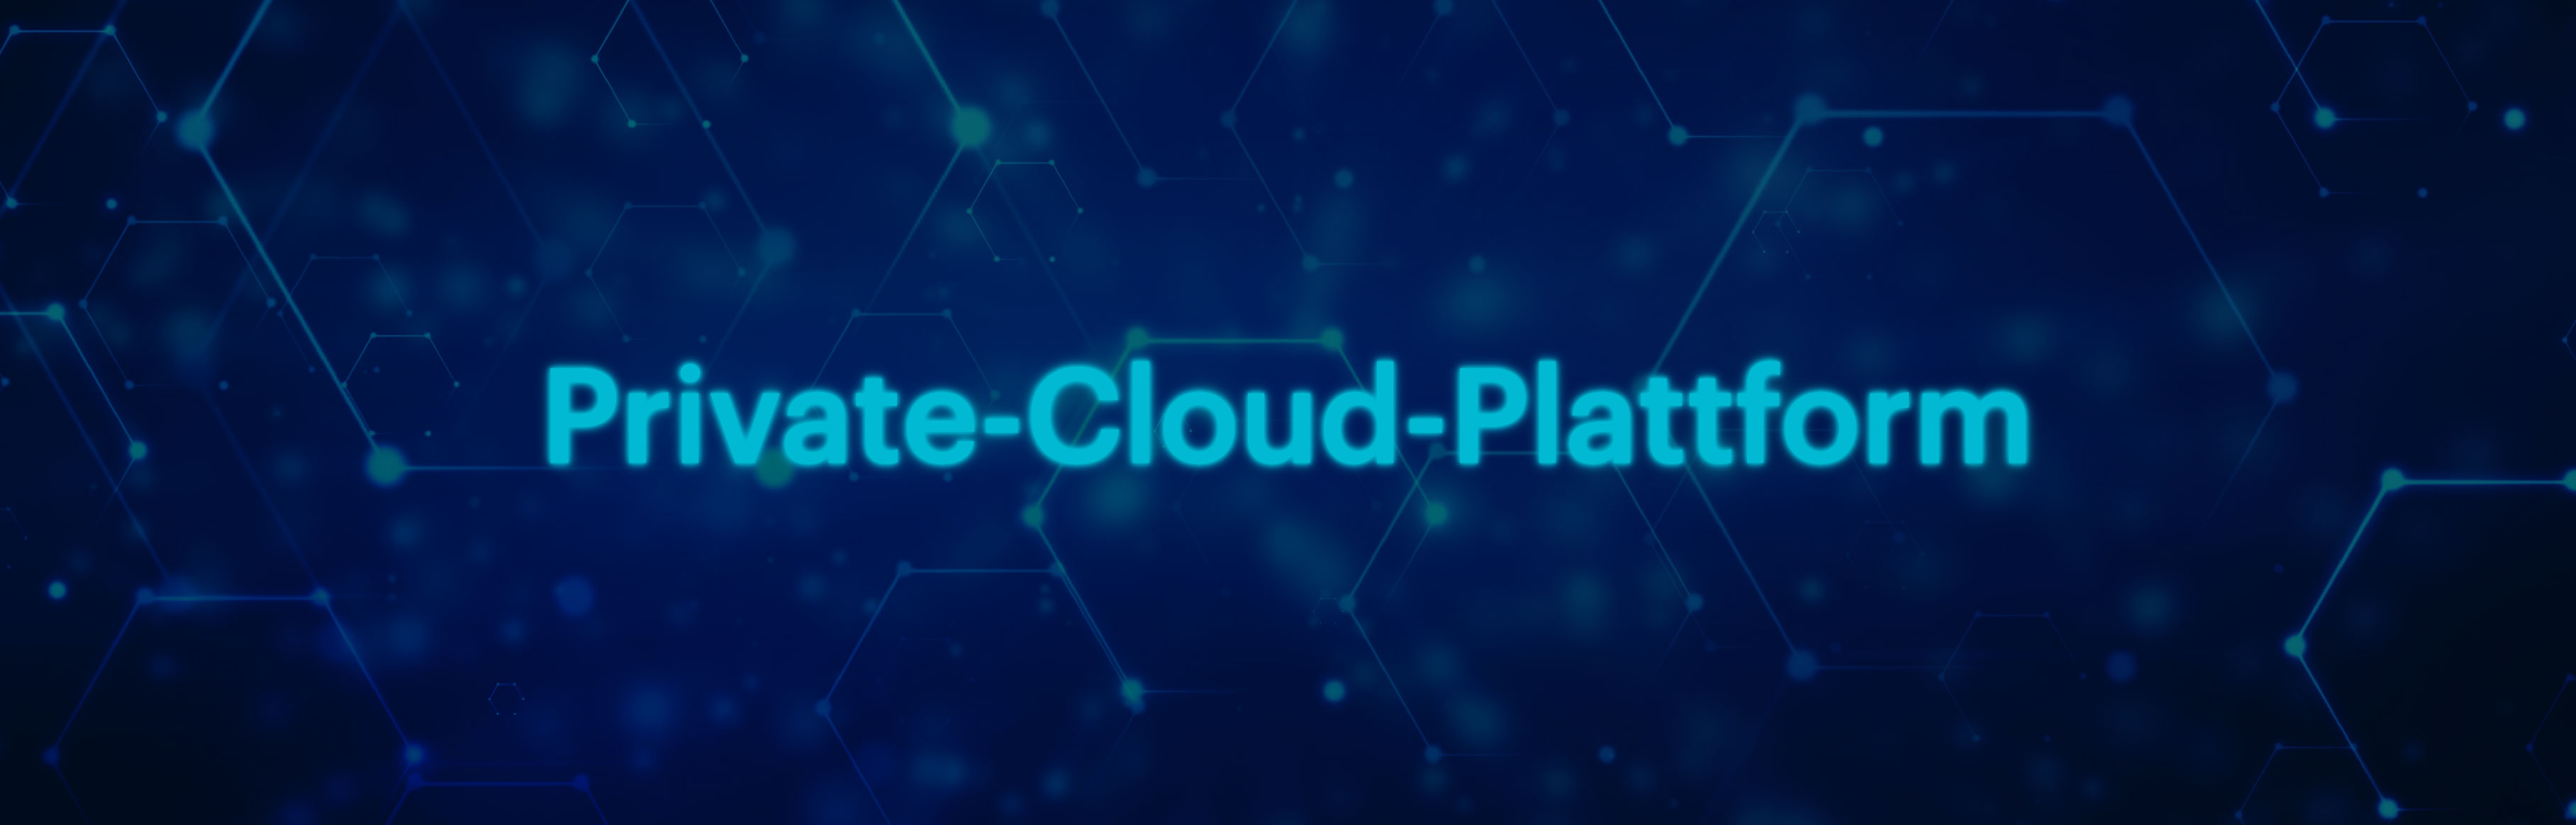 Private-Cloud-Plattform für Banking & Insurance-Anwendungen